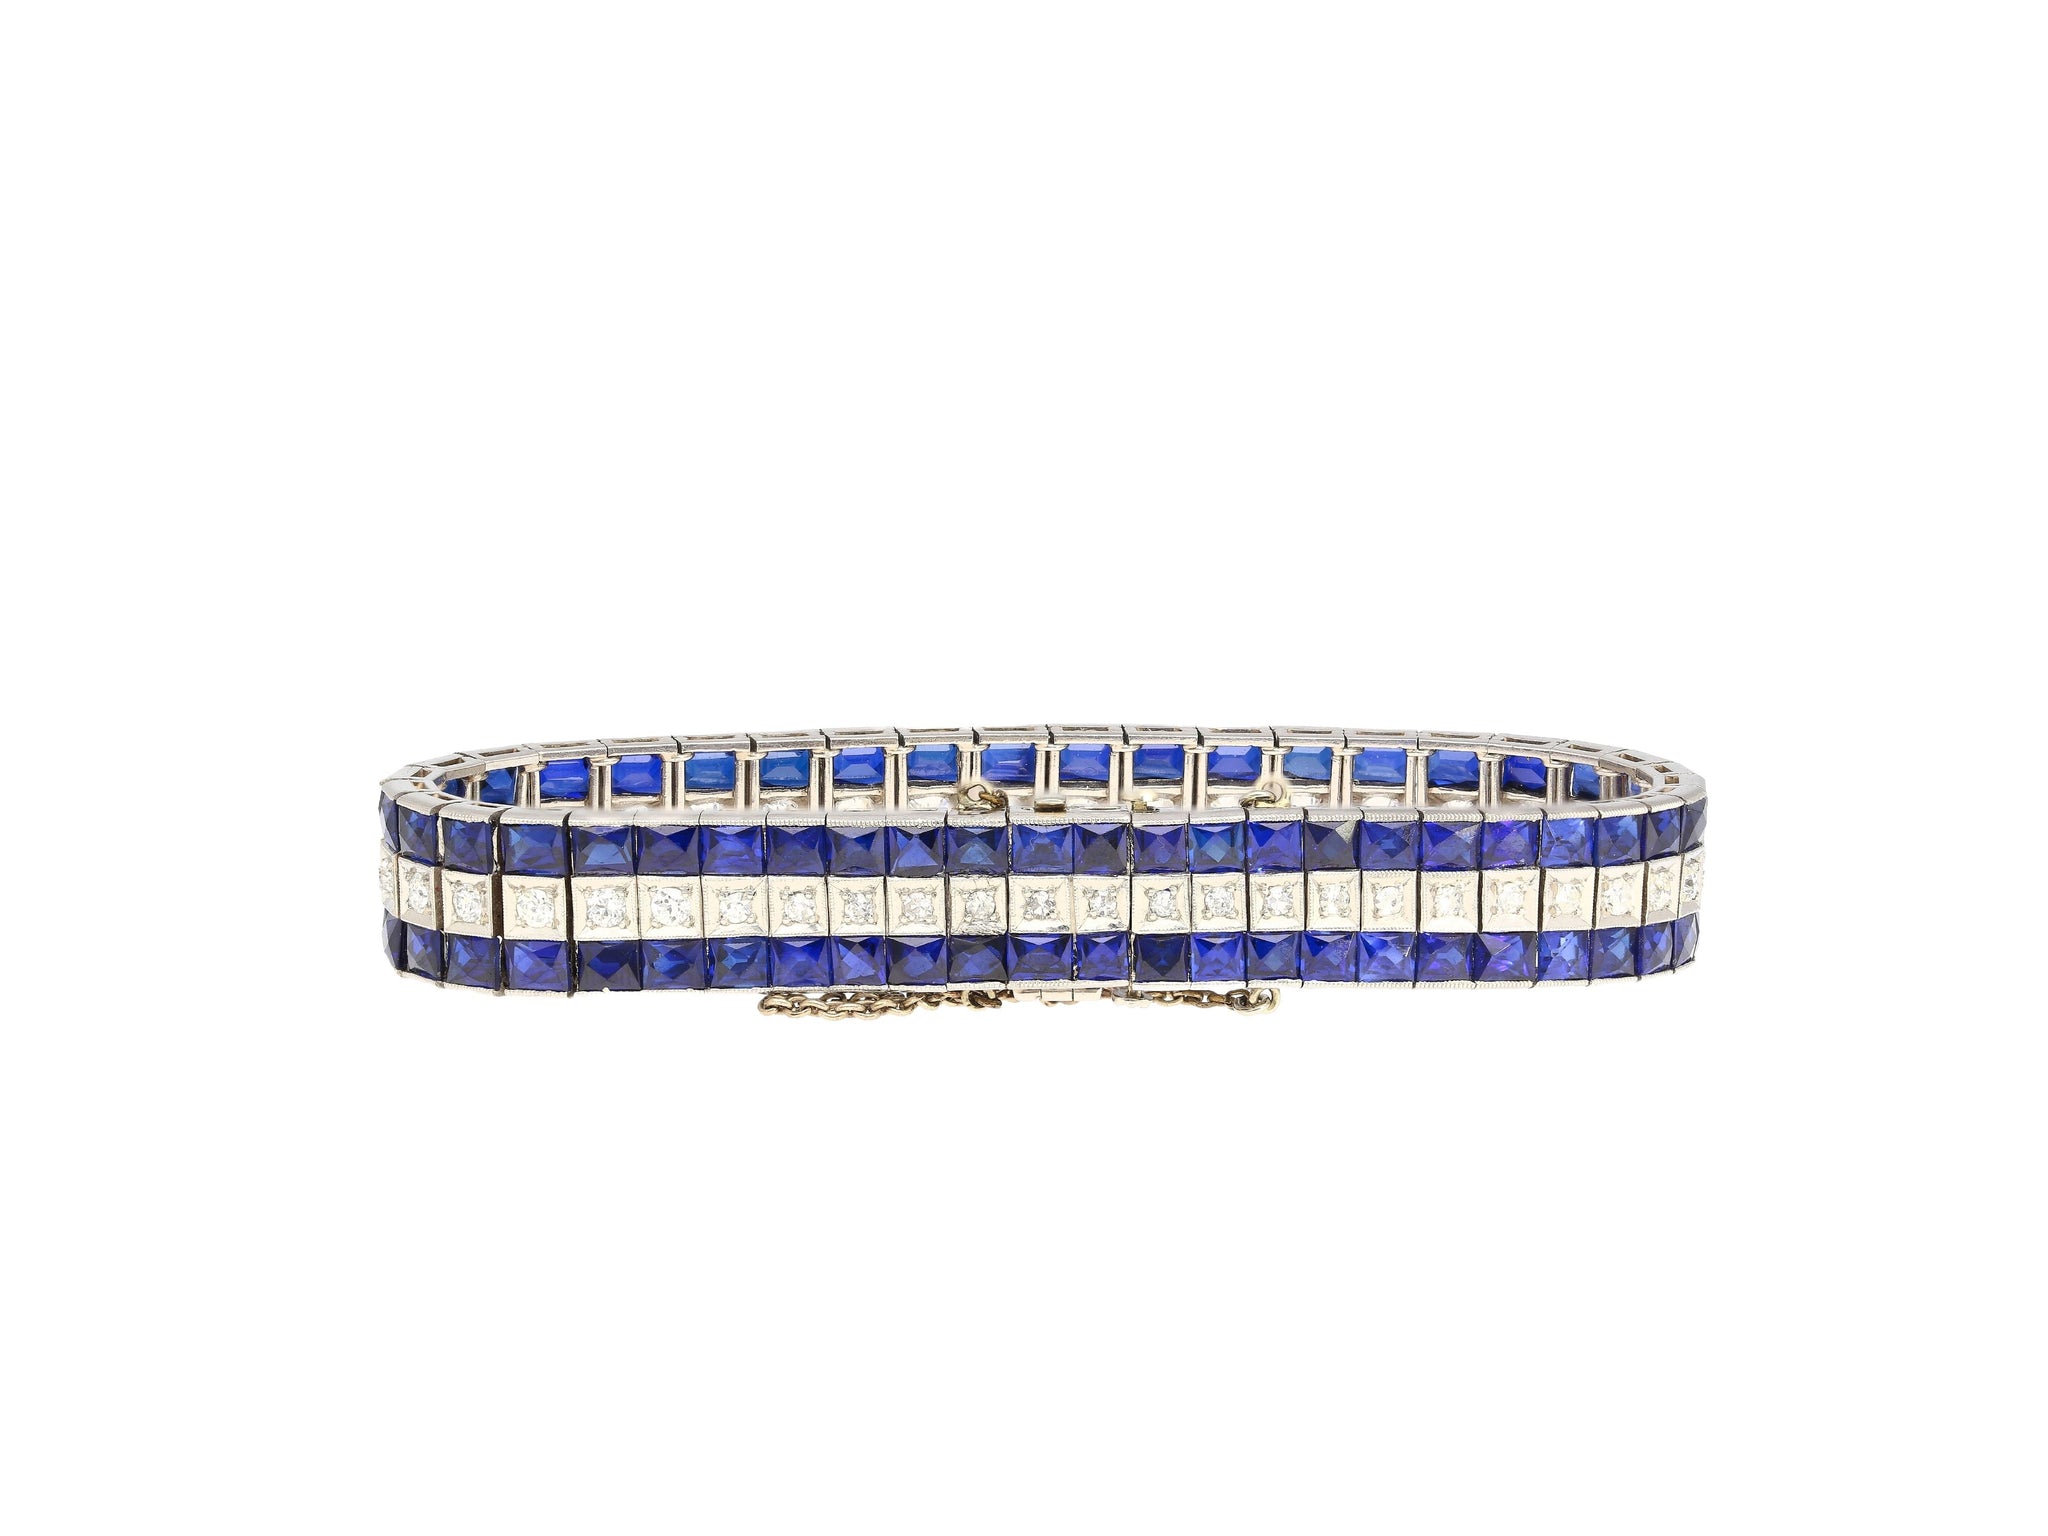 5.50 Carat Vintage Art Deco Platinum Bracelet With Diamonds and Princess-Cut Blue Sapphires